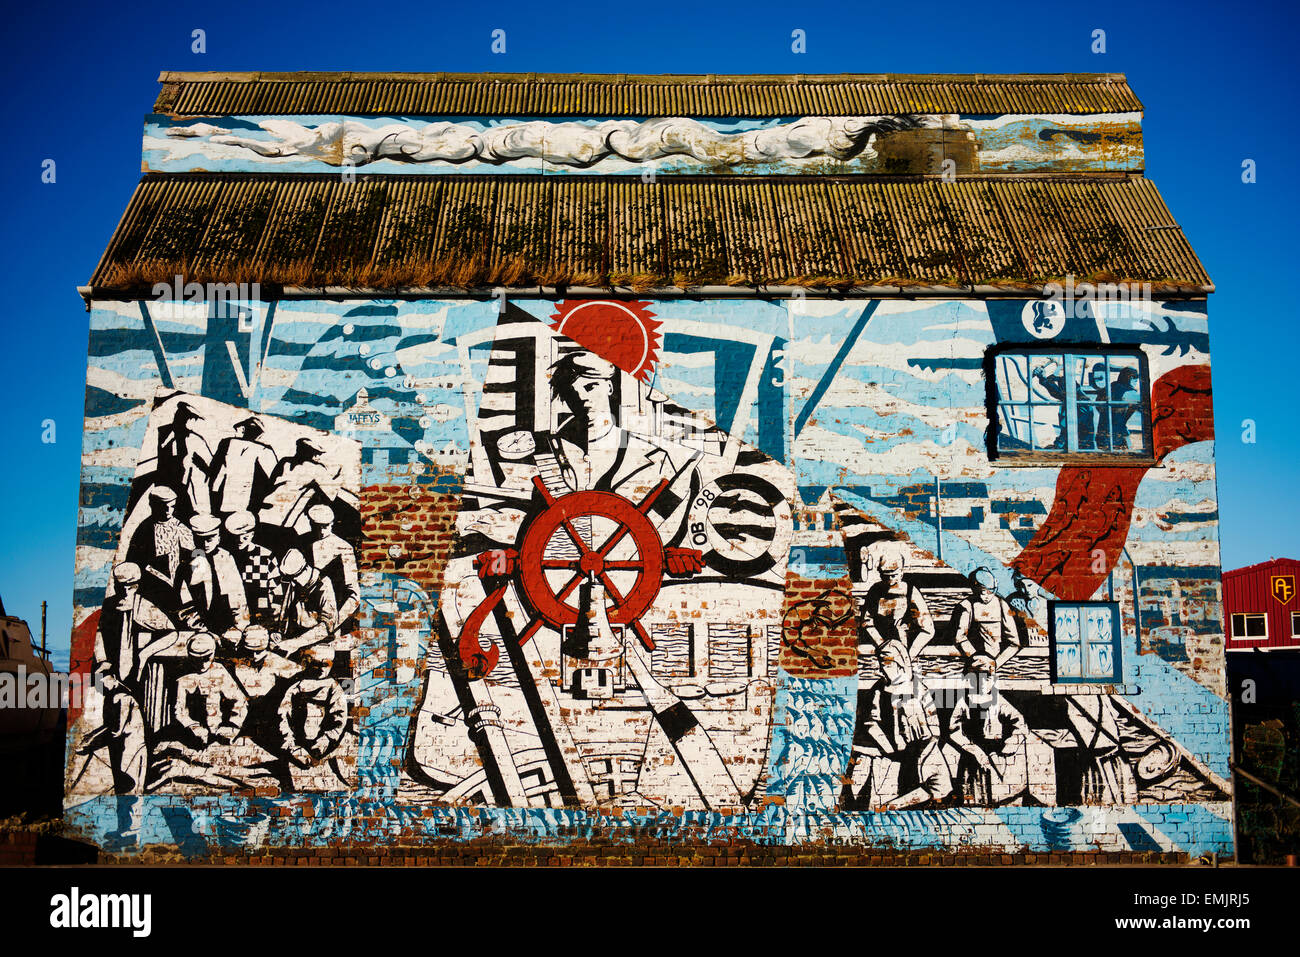 Wandbild eines Gebäudes im Bereich Hafens Mallaigs Seefahrtsgeschichte reflektieren. Stockfoto